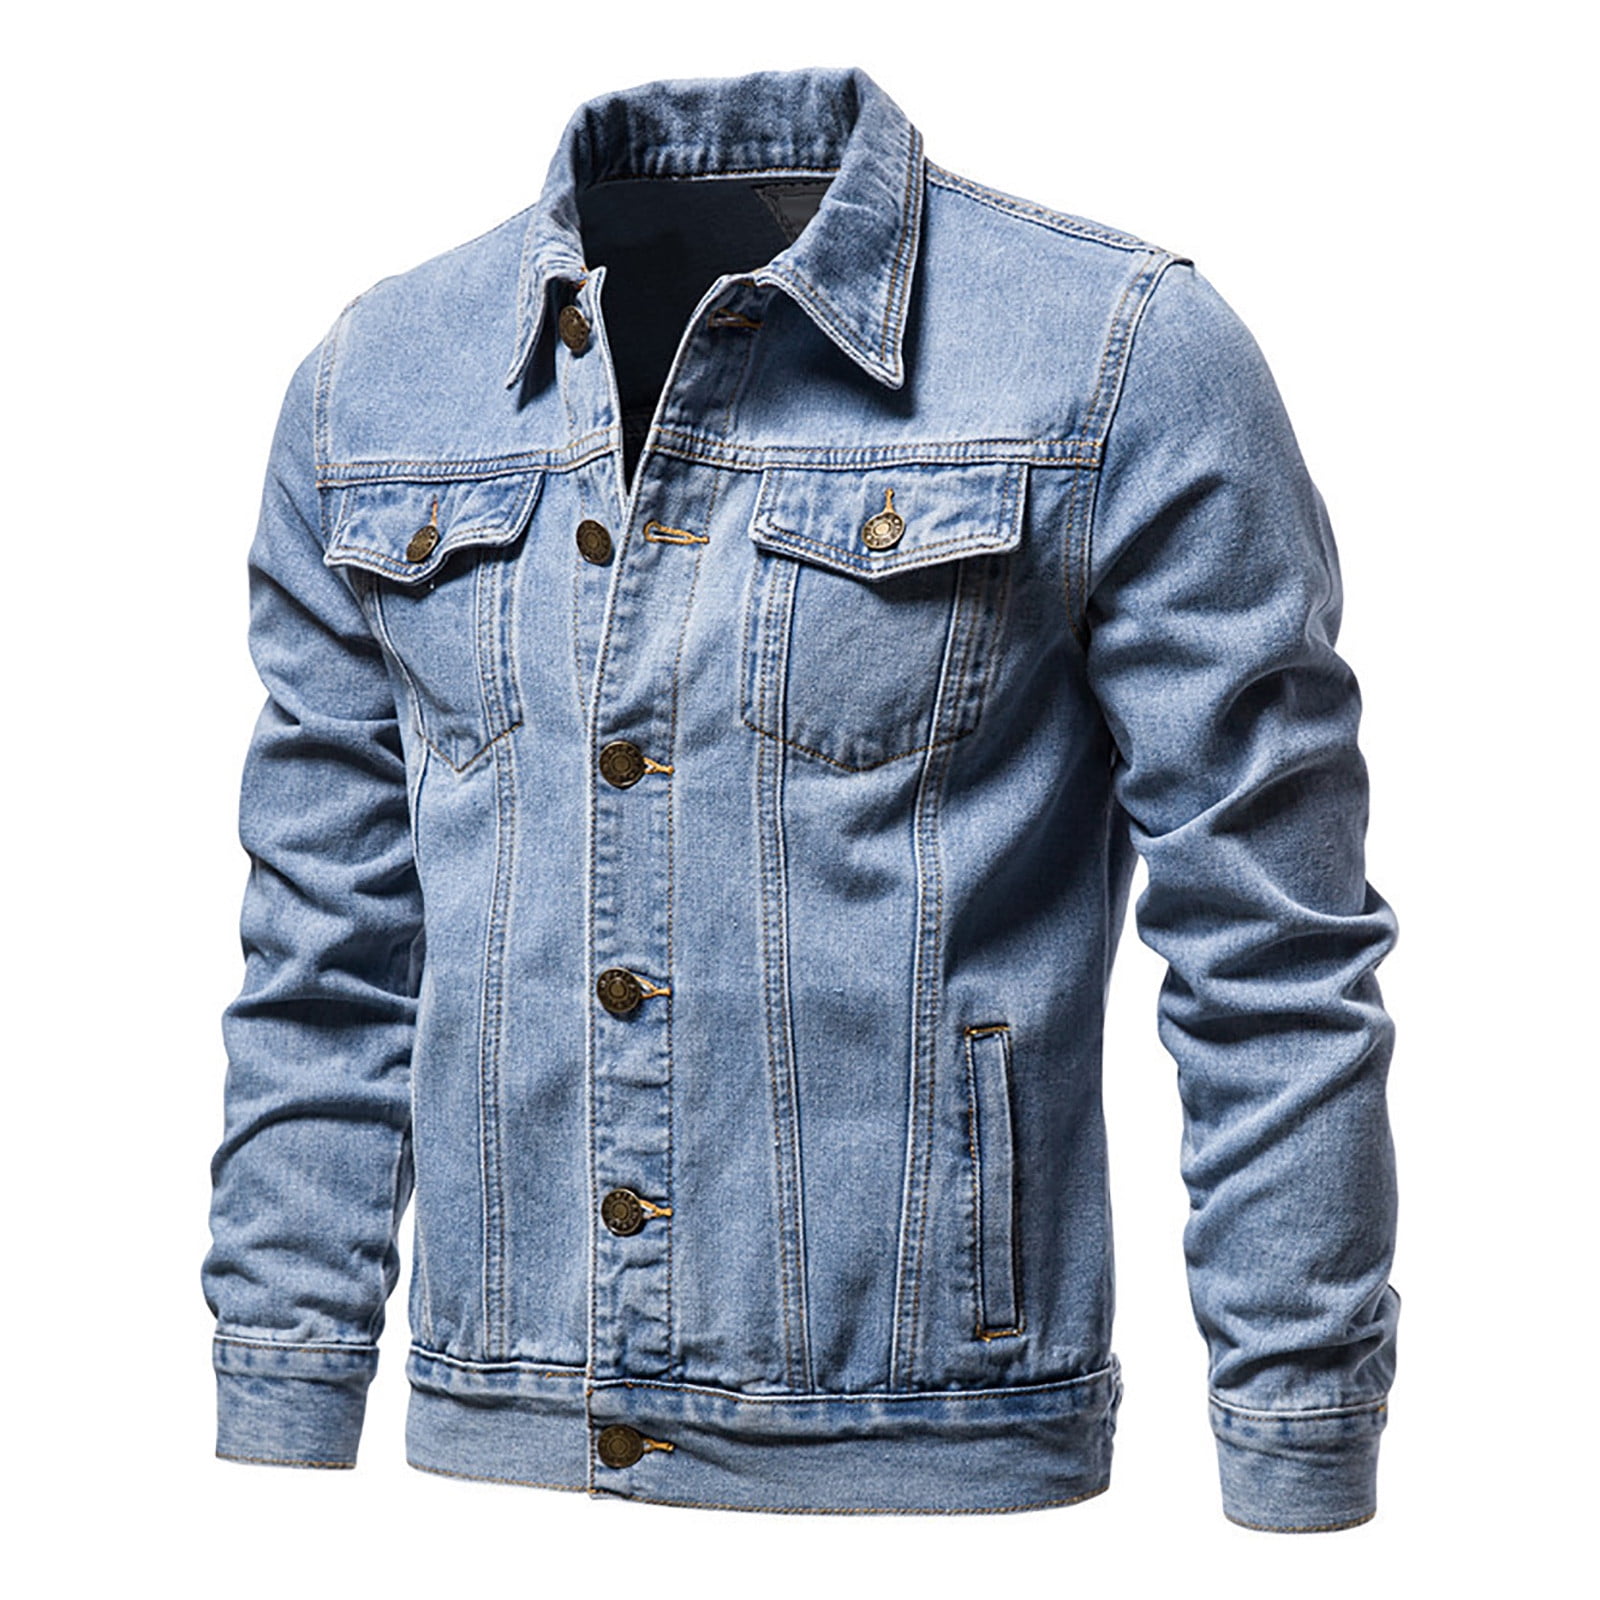 Odeerbi Clearance Denim Jackets Outwear for Men Trendy Casual Jacket ...